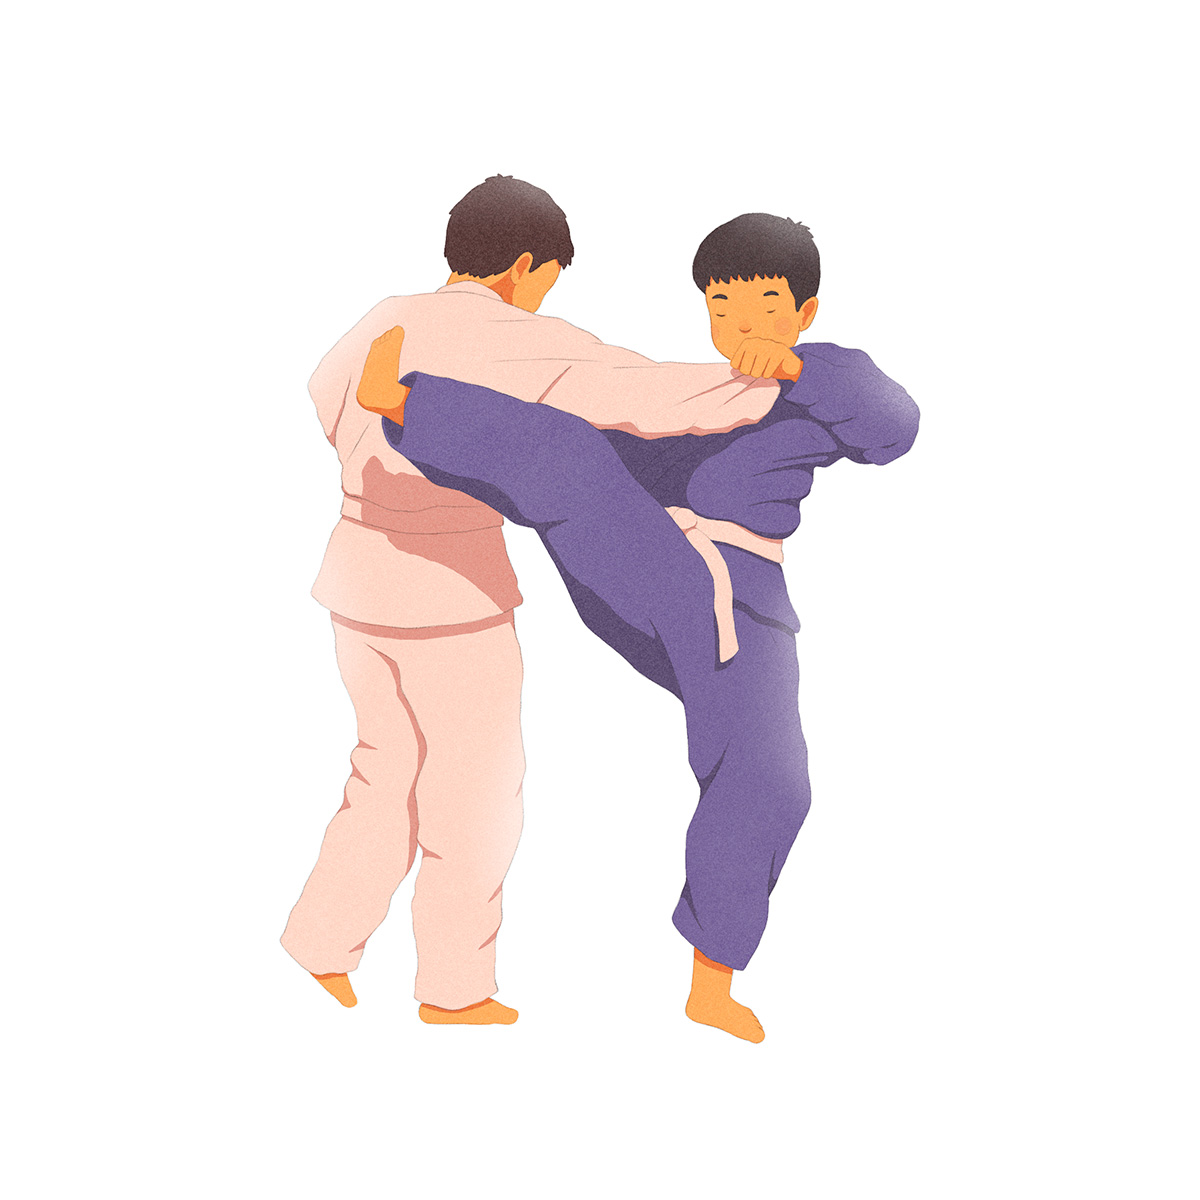 Ilustração de duas crianças em pé, fazendo movimentos da arte marcial, em kimono azul e rosa.